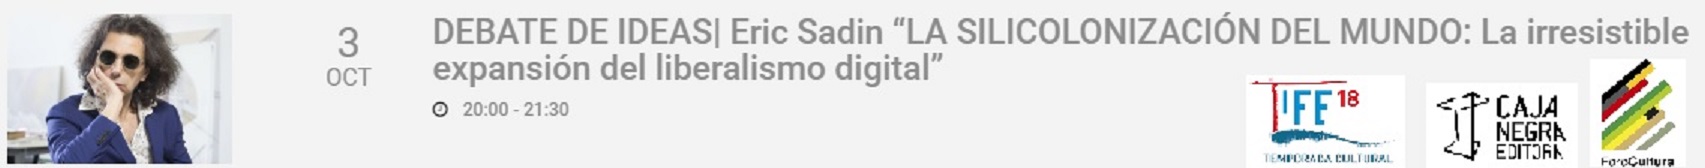 DEBATE Eric Sadin “La siliconización del mundo: La irresistible expansión del liberalismo digital” en el IFM